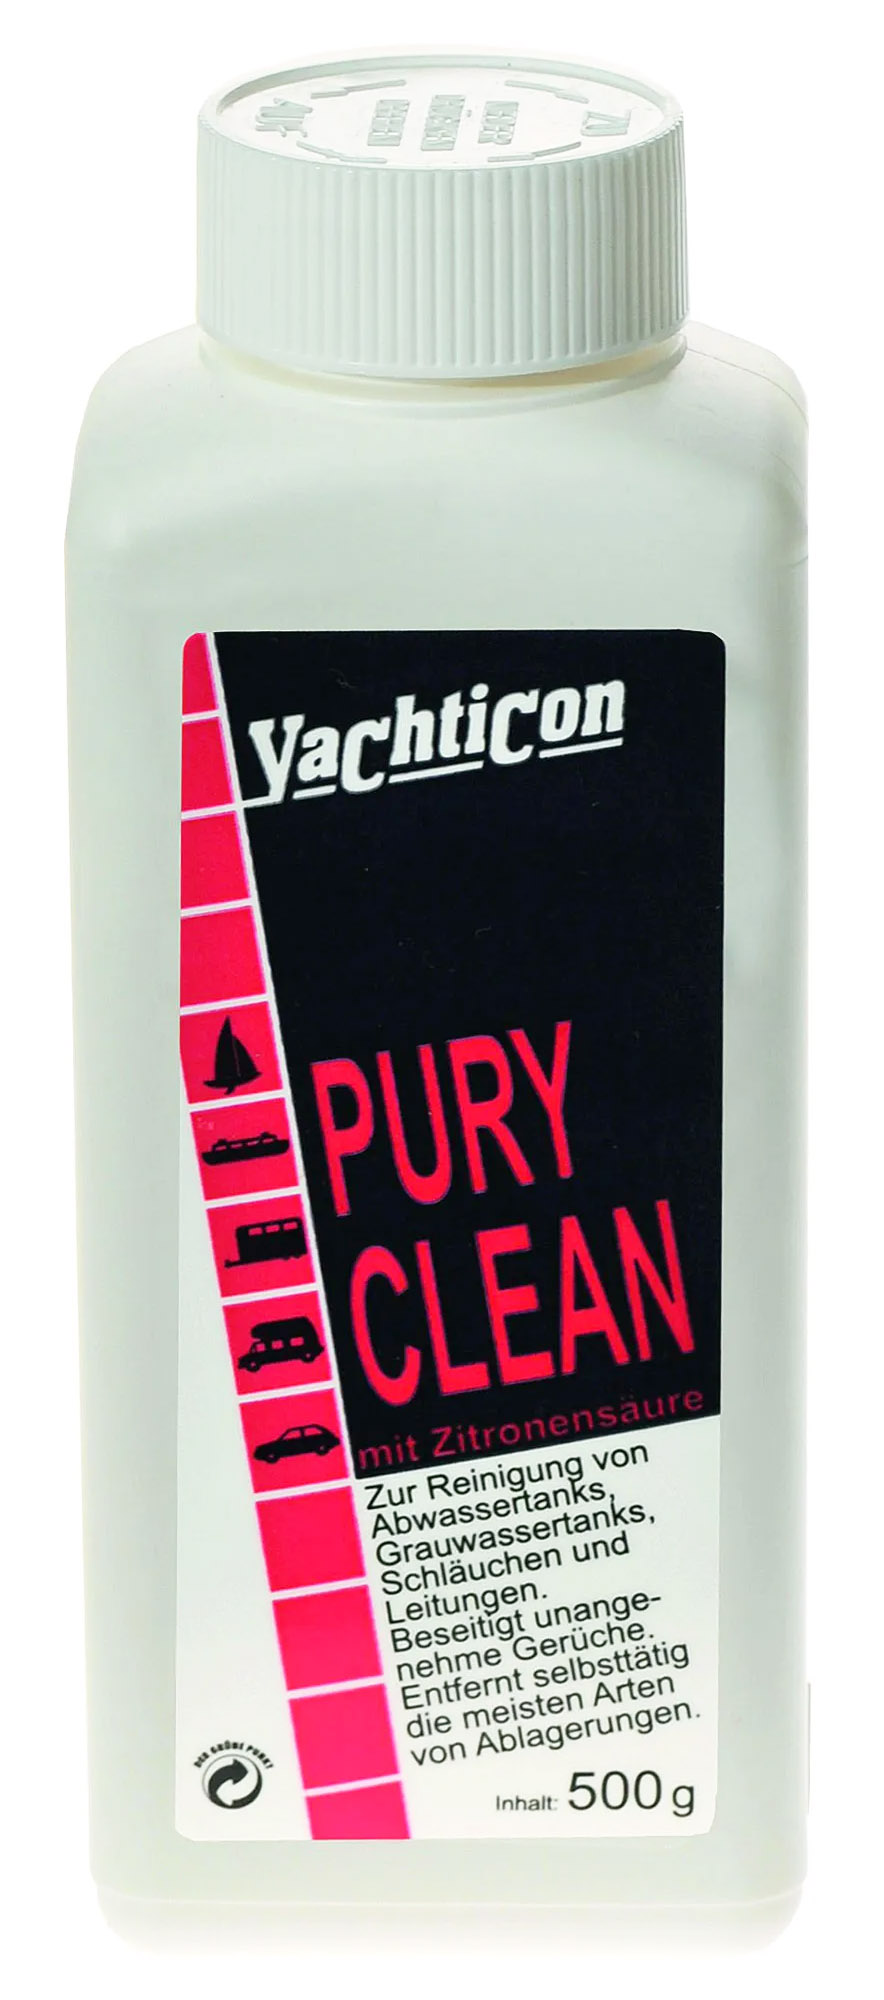 Yachticon Pury Clean Abwassertank Reiniger